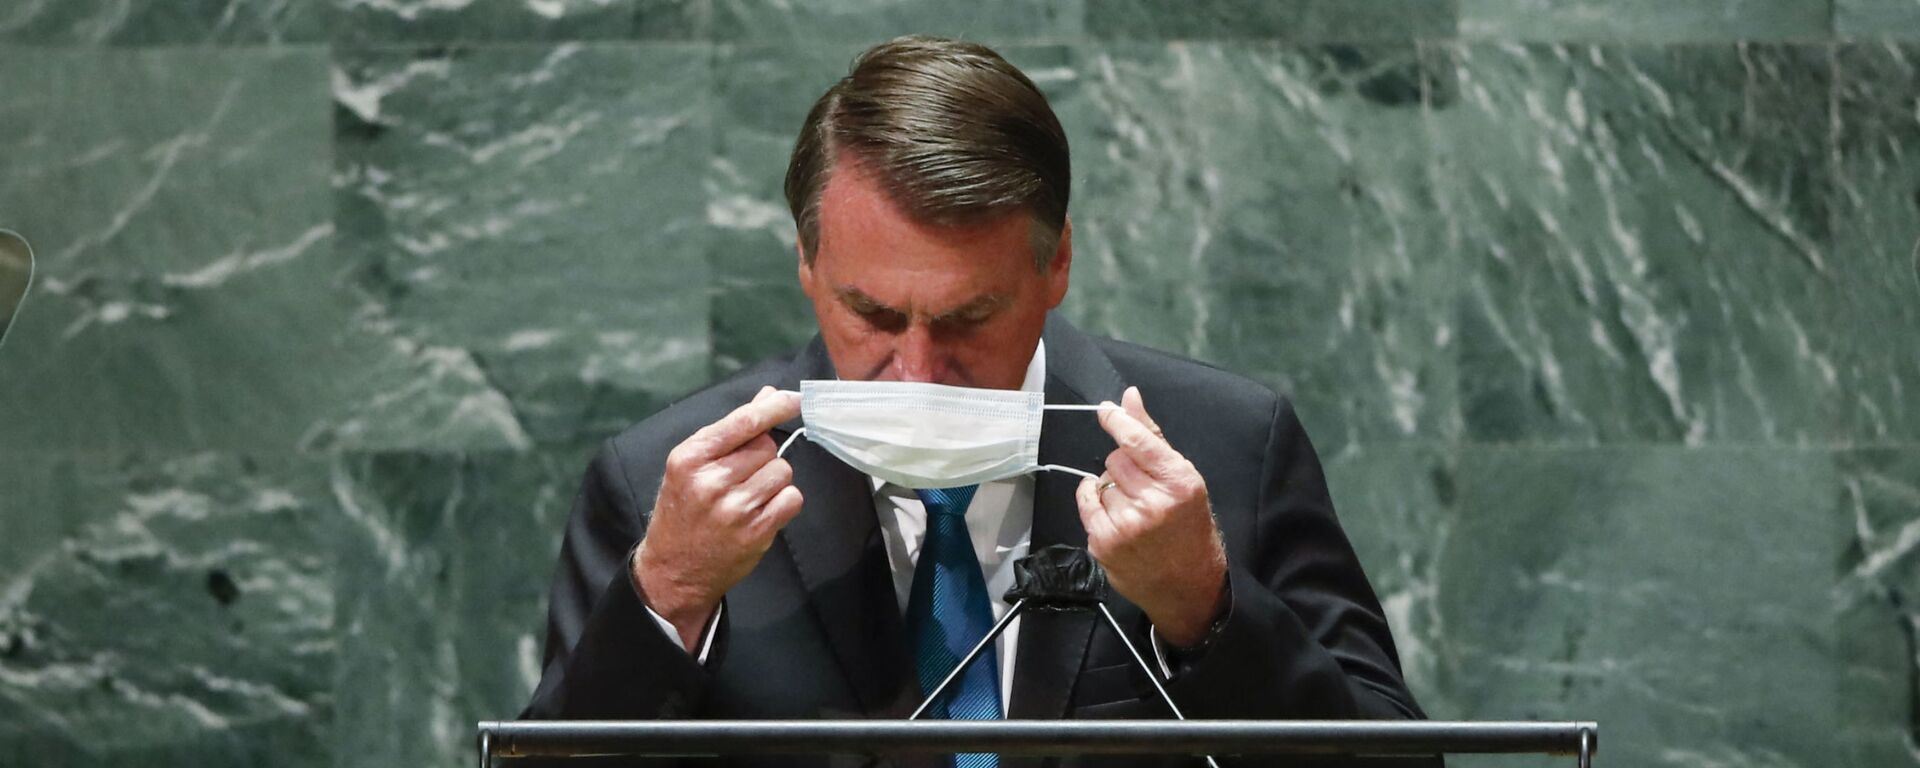 Presidente do Brasil, Jair Bolsonaro, volta a colocar máscara após falar na 76ª Assembleia Geral da ONU em 21 de setembro de 2021, em Nova York, EUA - Sputnik Brasil, 1920, 21.09.2021